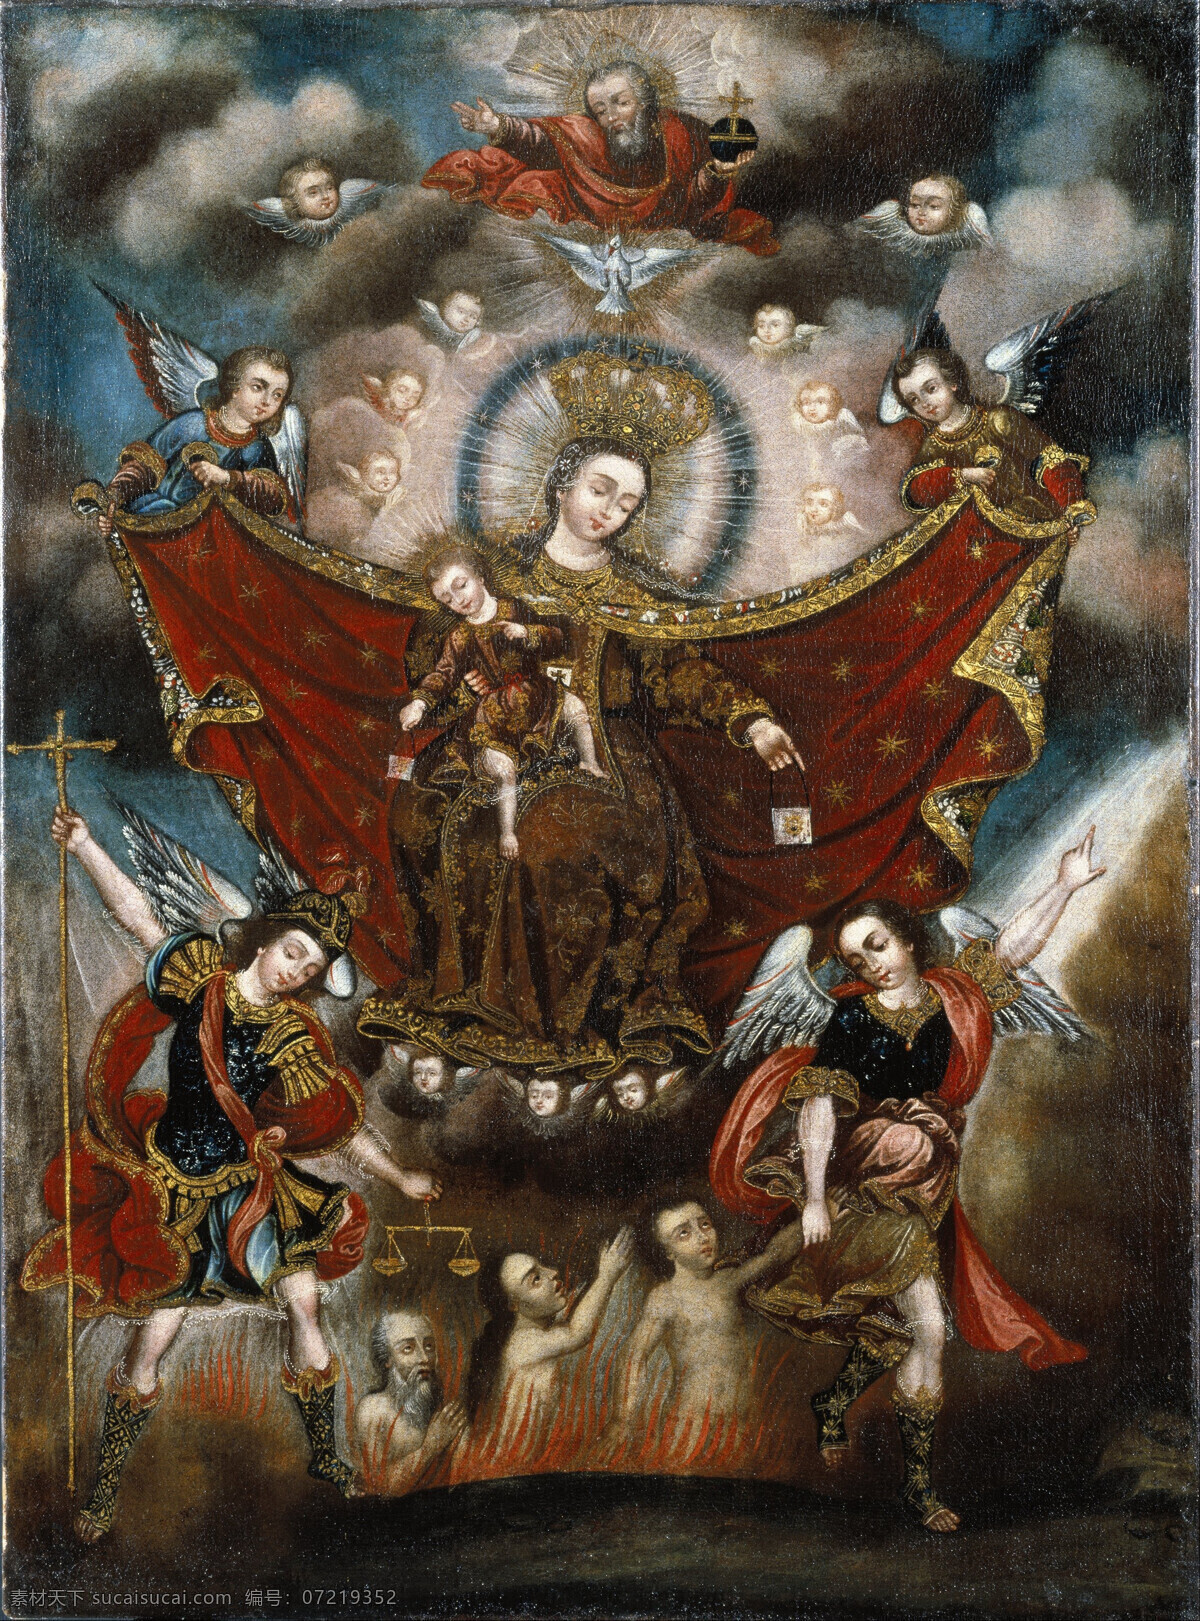 圣母拯救灵魂 布尔卡托迦密 宗教油画 圣母与圣婴 天使 降临 灵魂 救 赎 净化 19世纪油画 油画 绘画书法 文化艺术